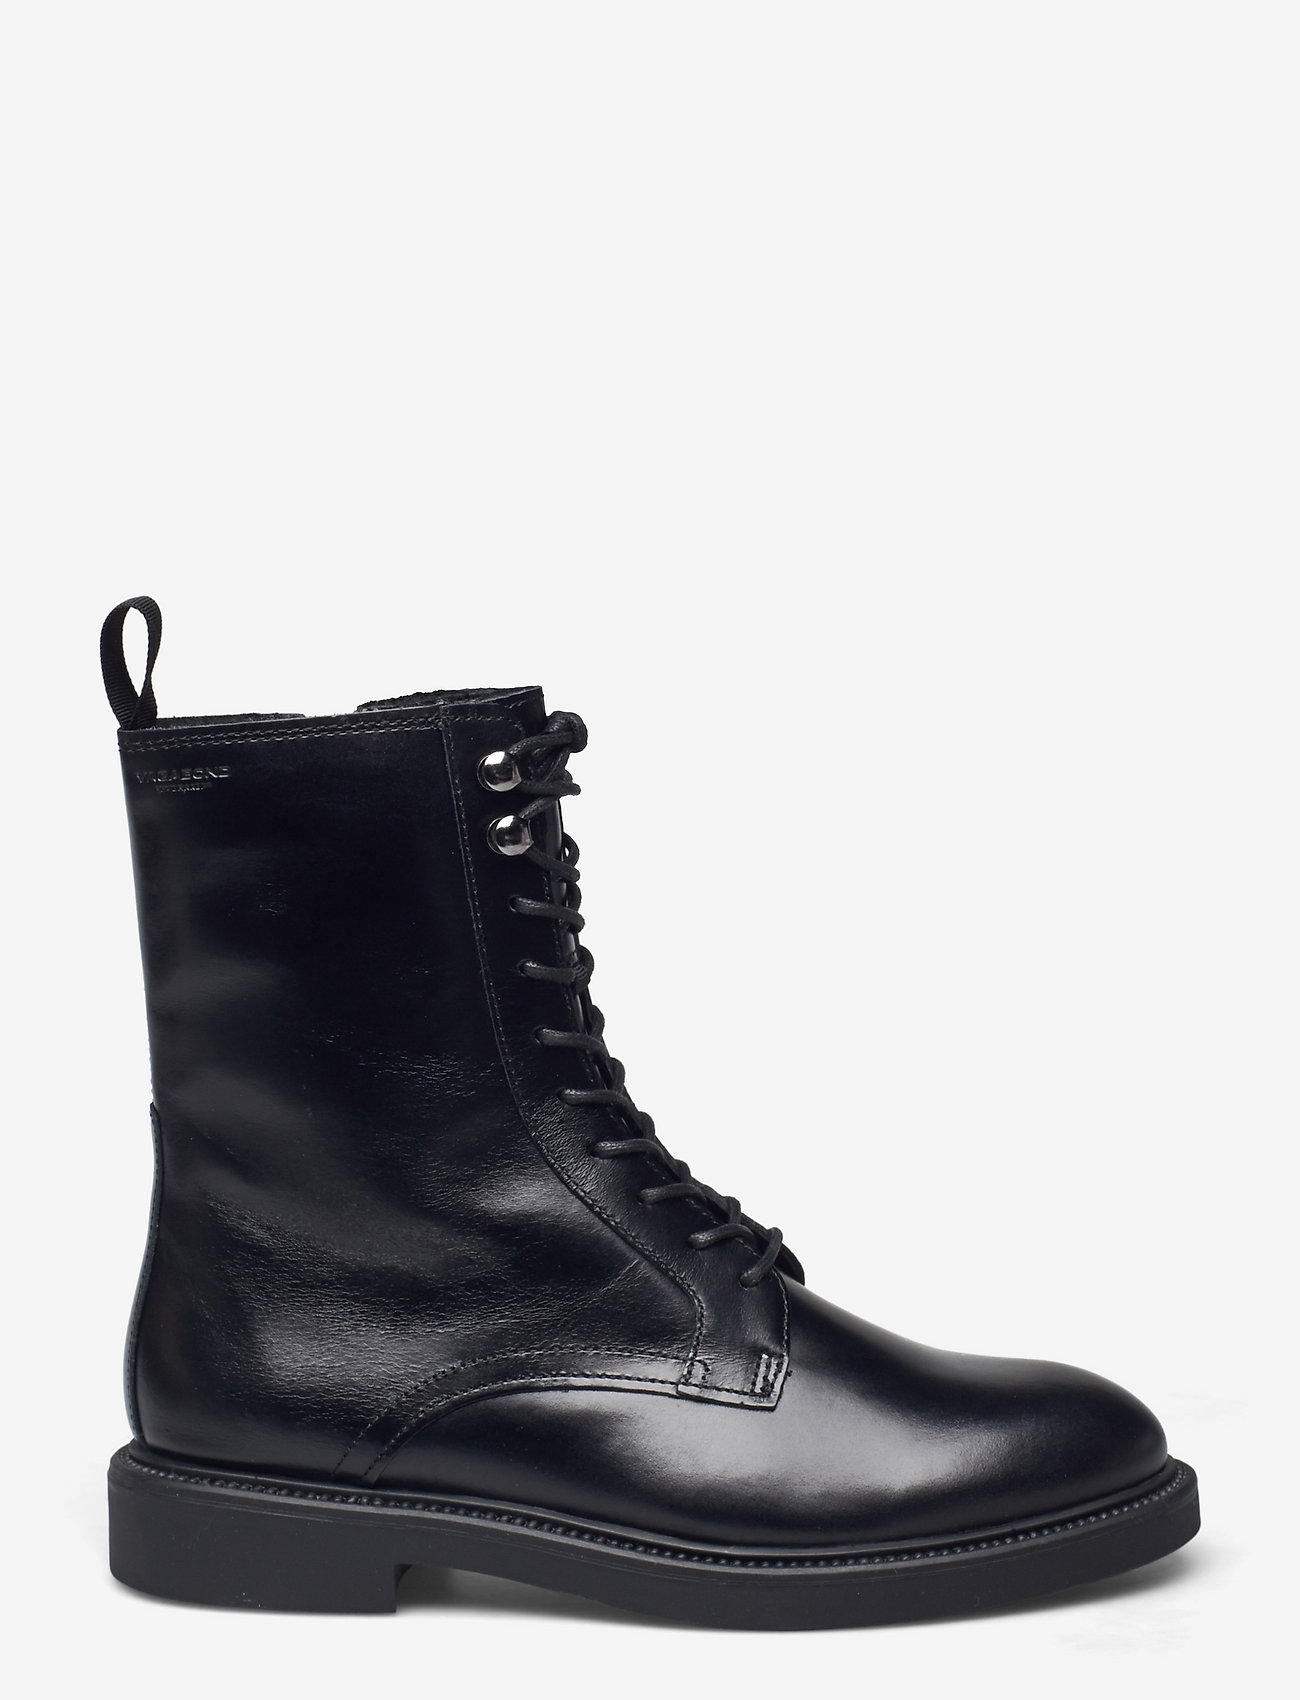 VAGABOND - ALEX W - laced boots - black - 1